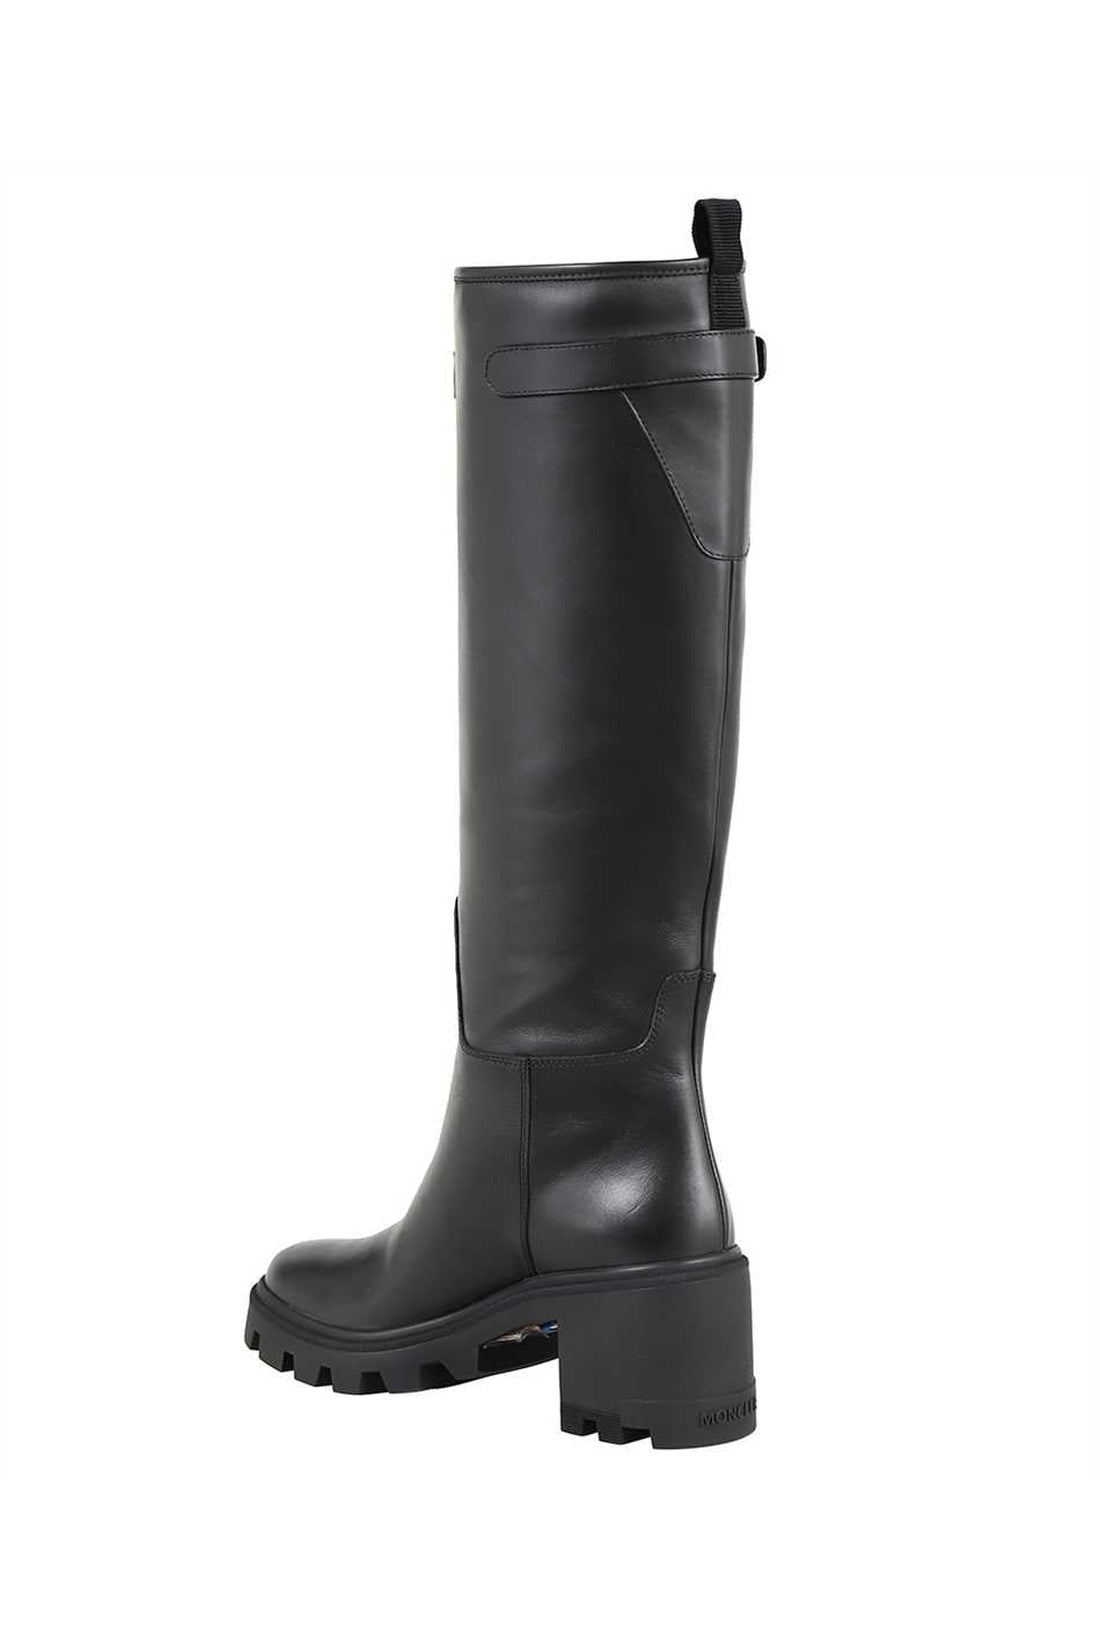 Moncler-OUTLET-SALE-Leather boots-ARCHIVIST